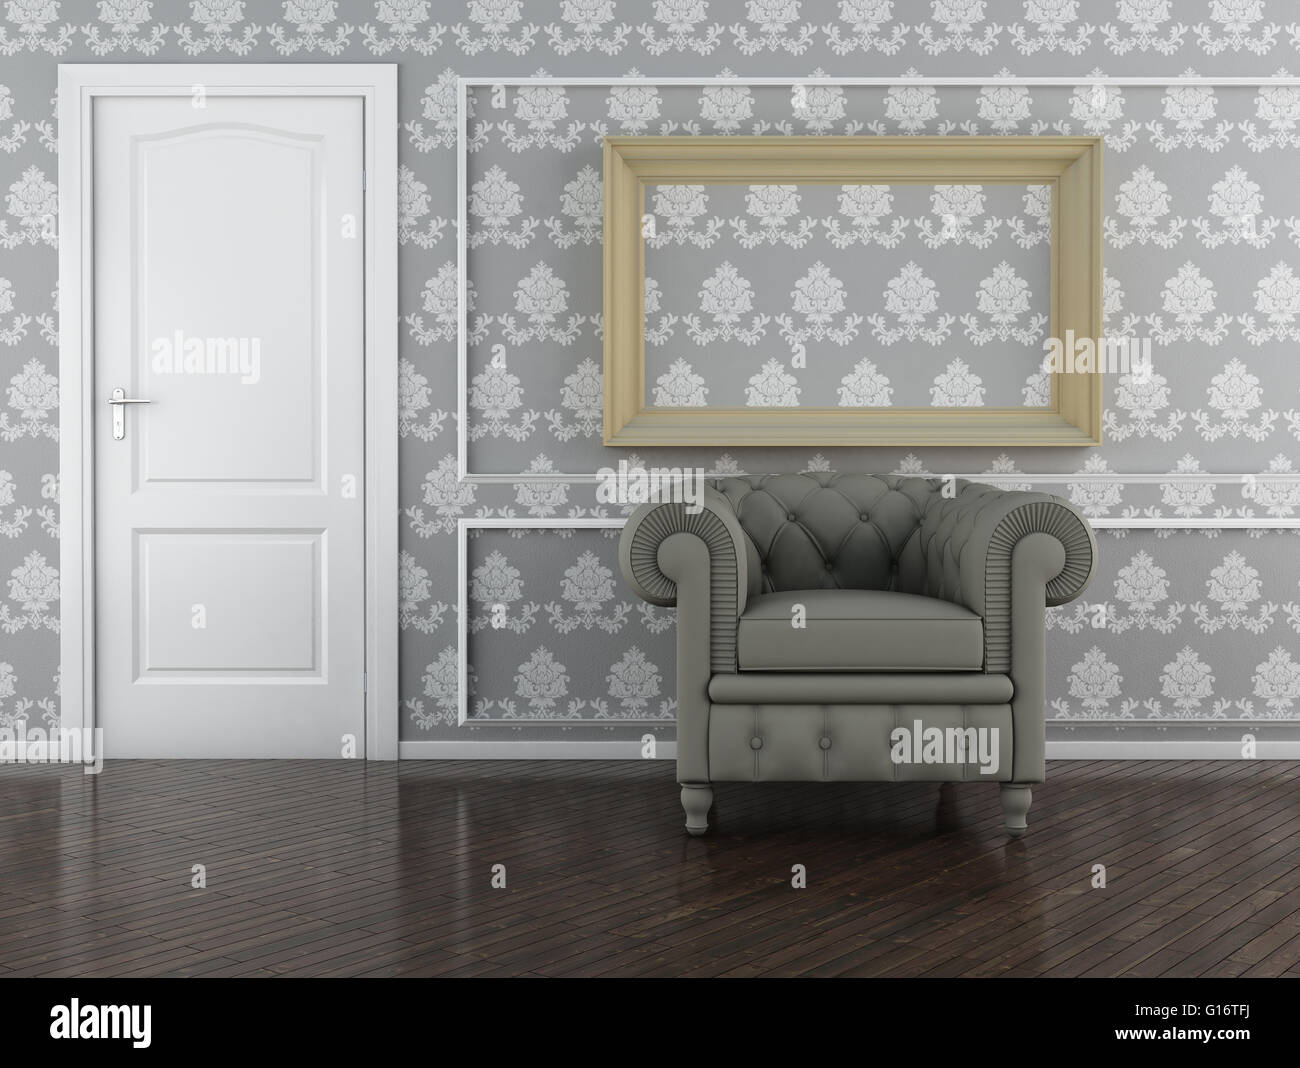 Klassisches Interieur (3D Render) - Eleganz Möbel Stockfoto